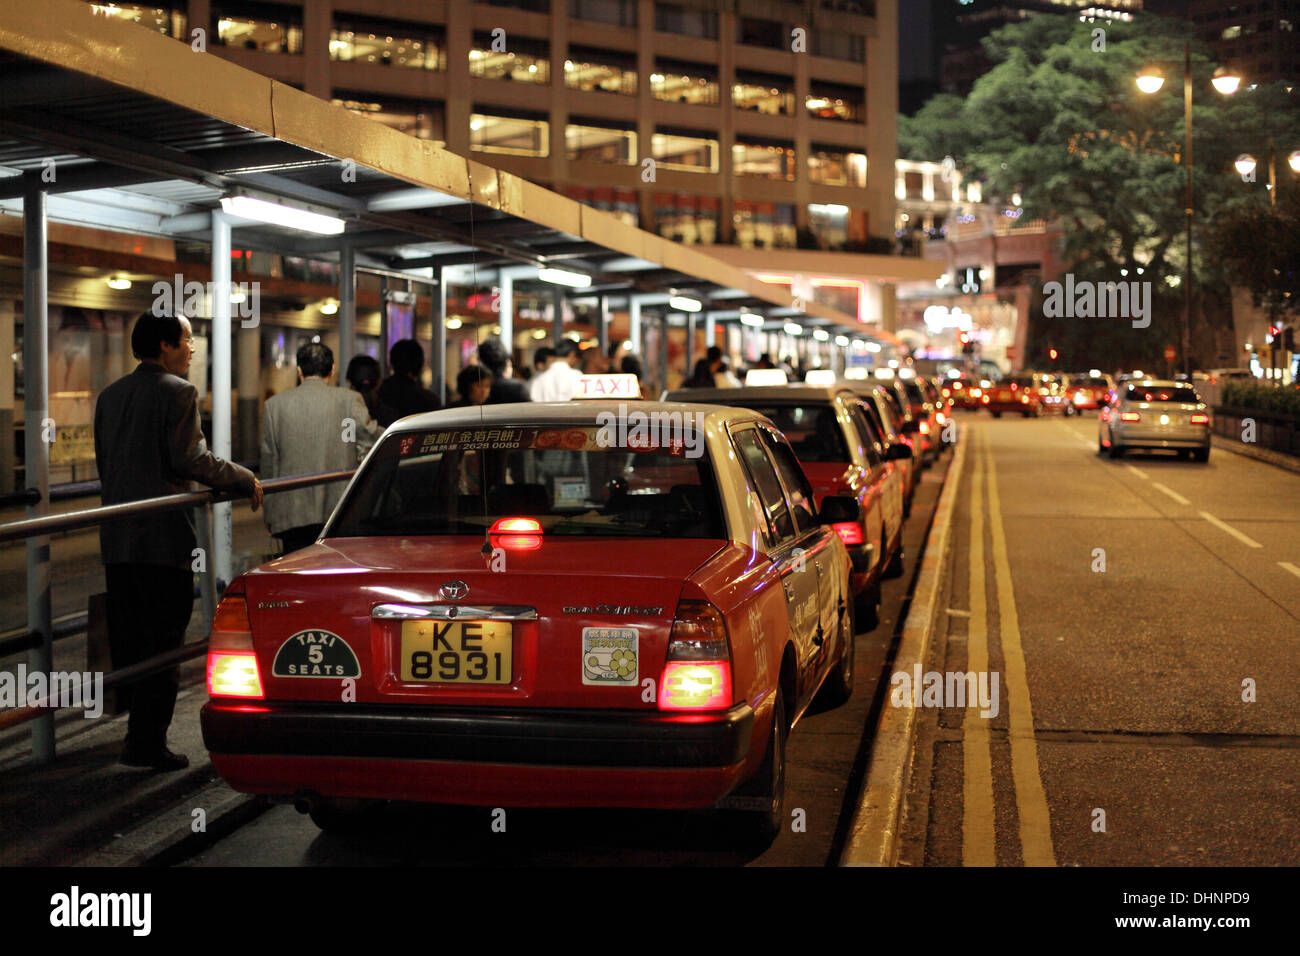 Taxi rank in Hong Kong at night Stock Photo